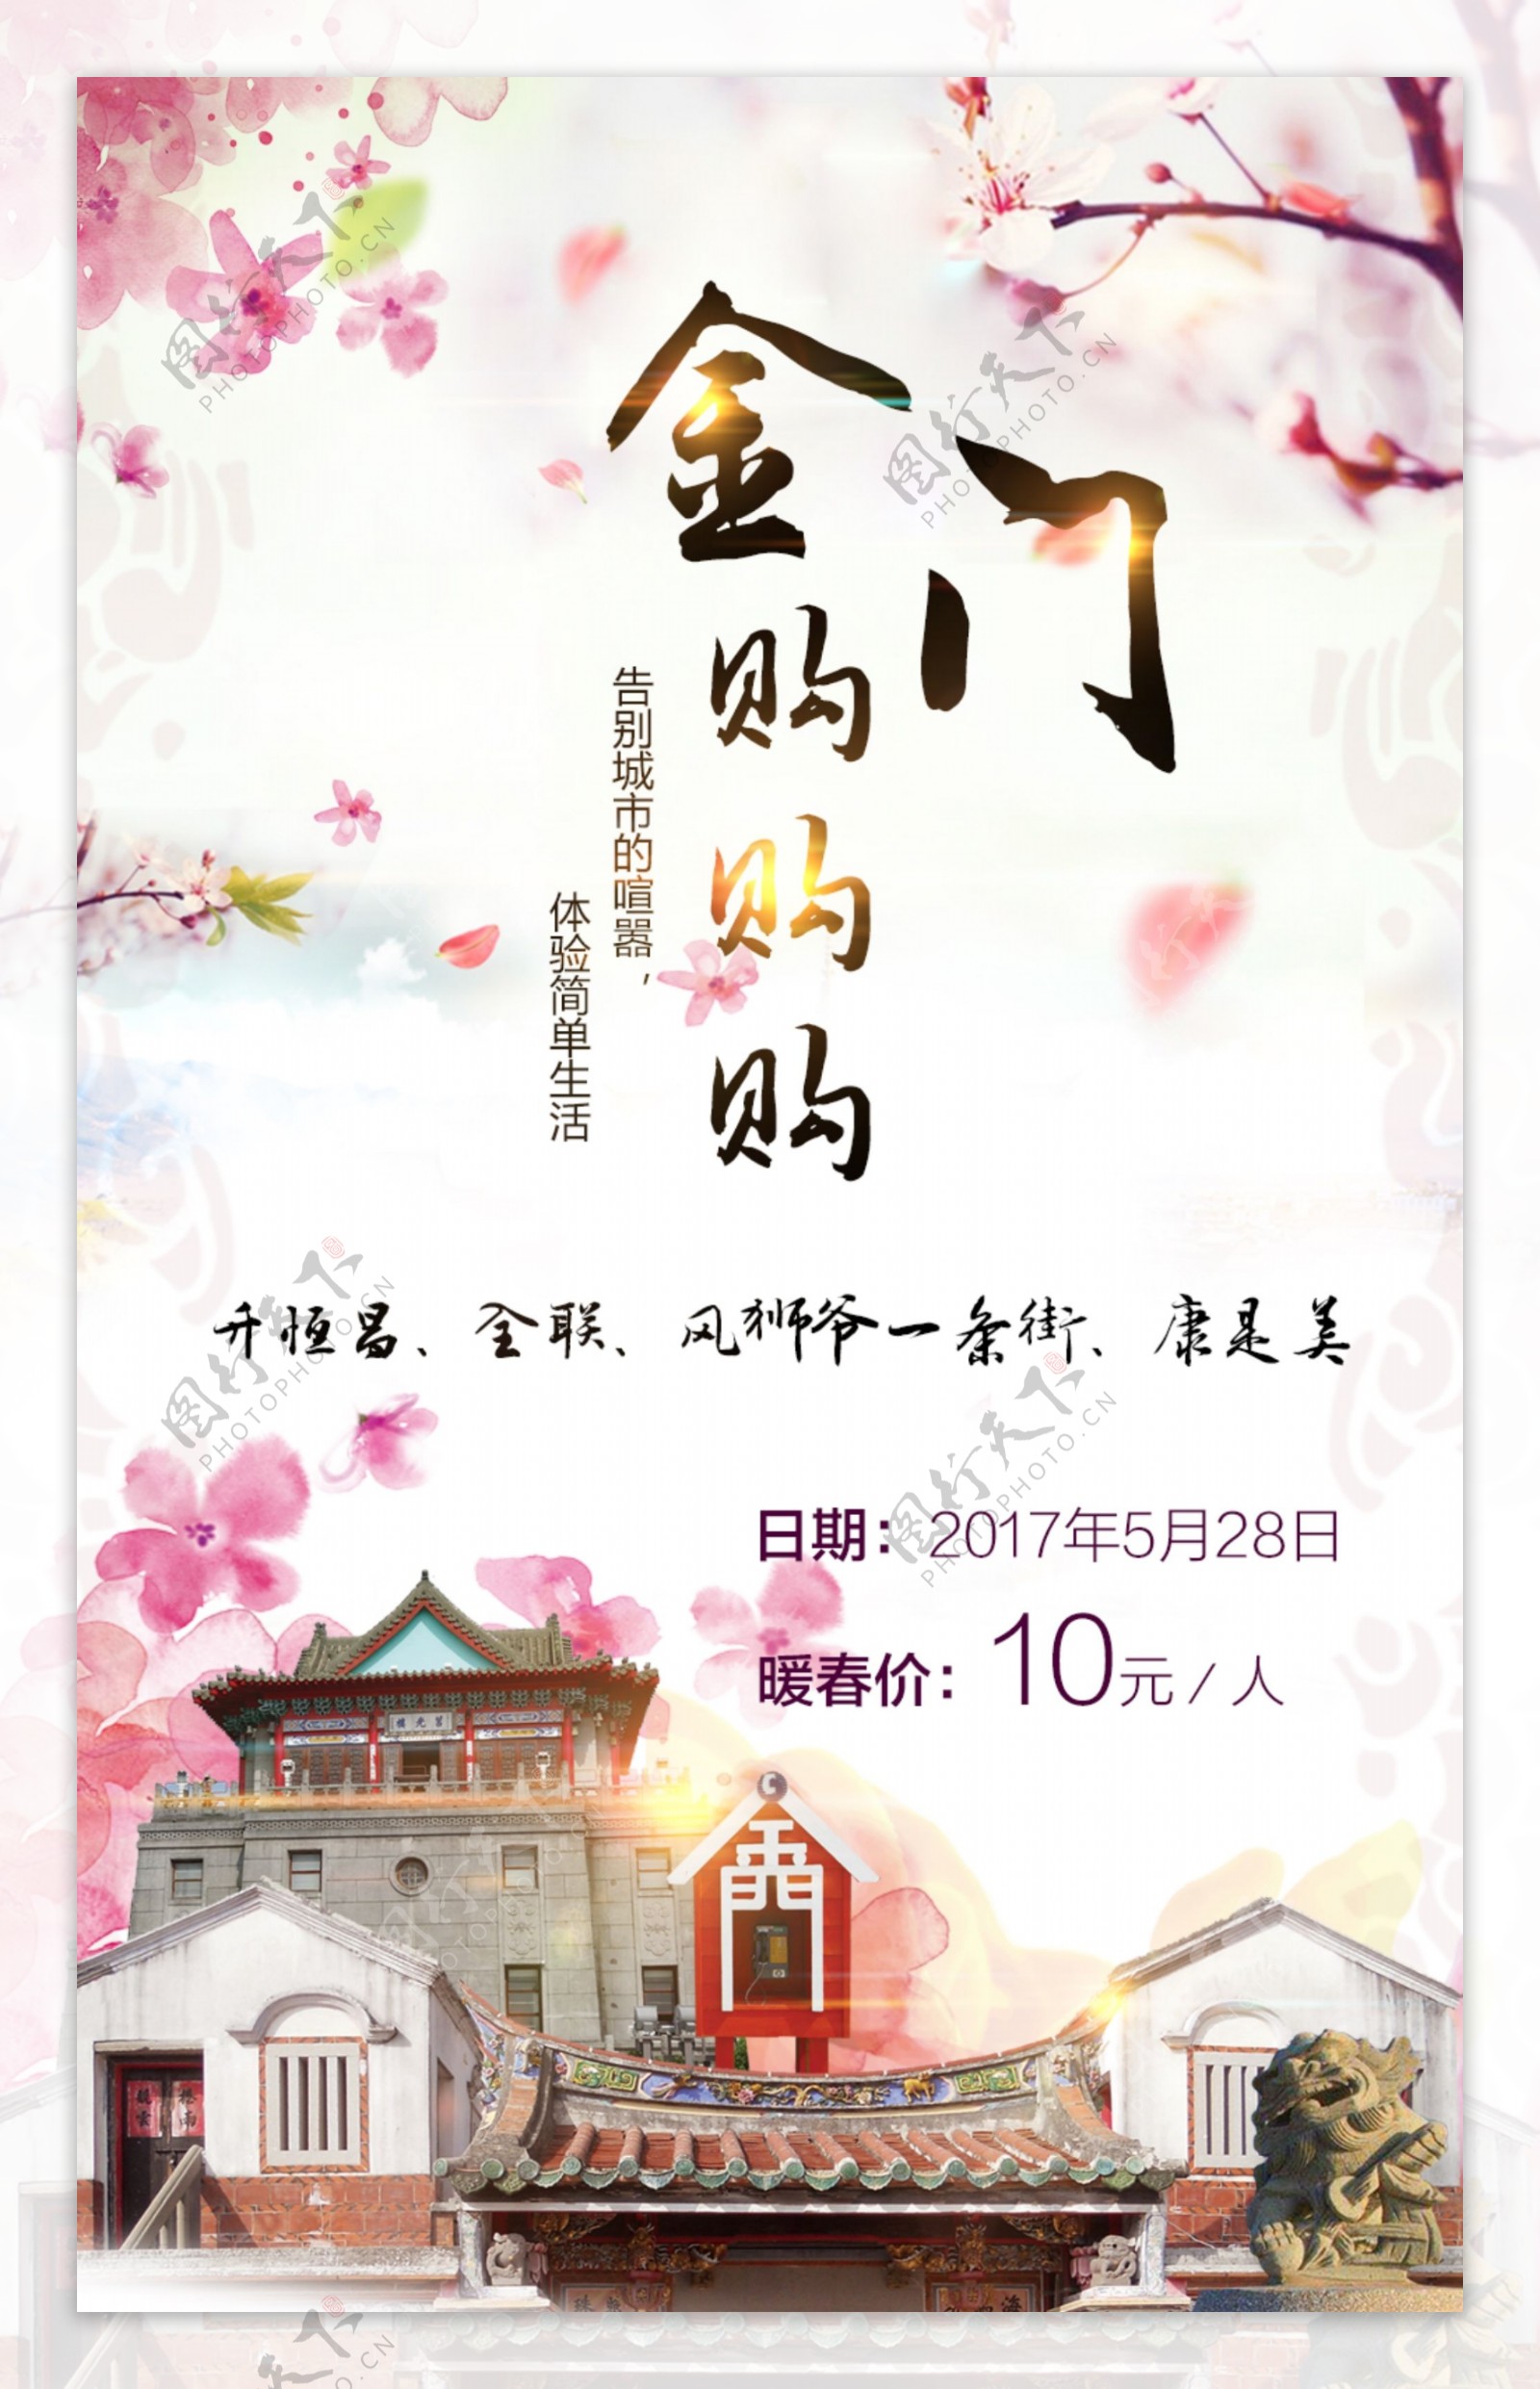 台湾金门购物观光旅游宣传海报